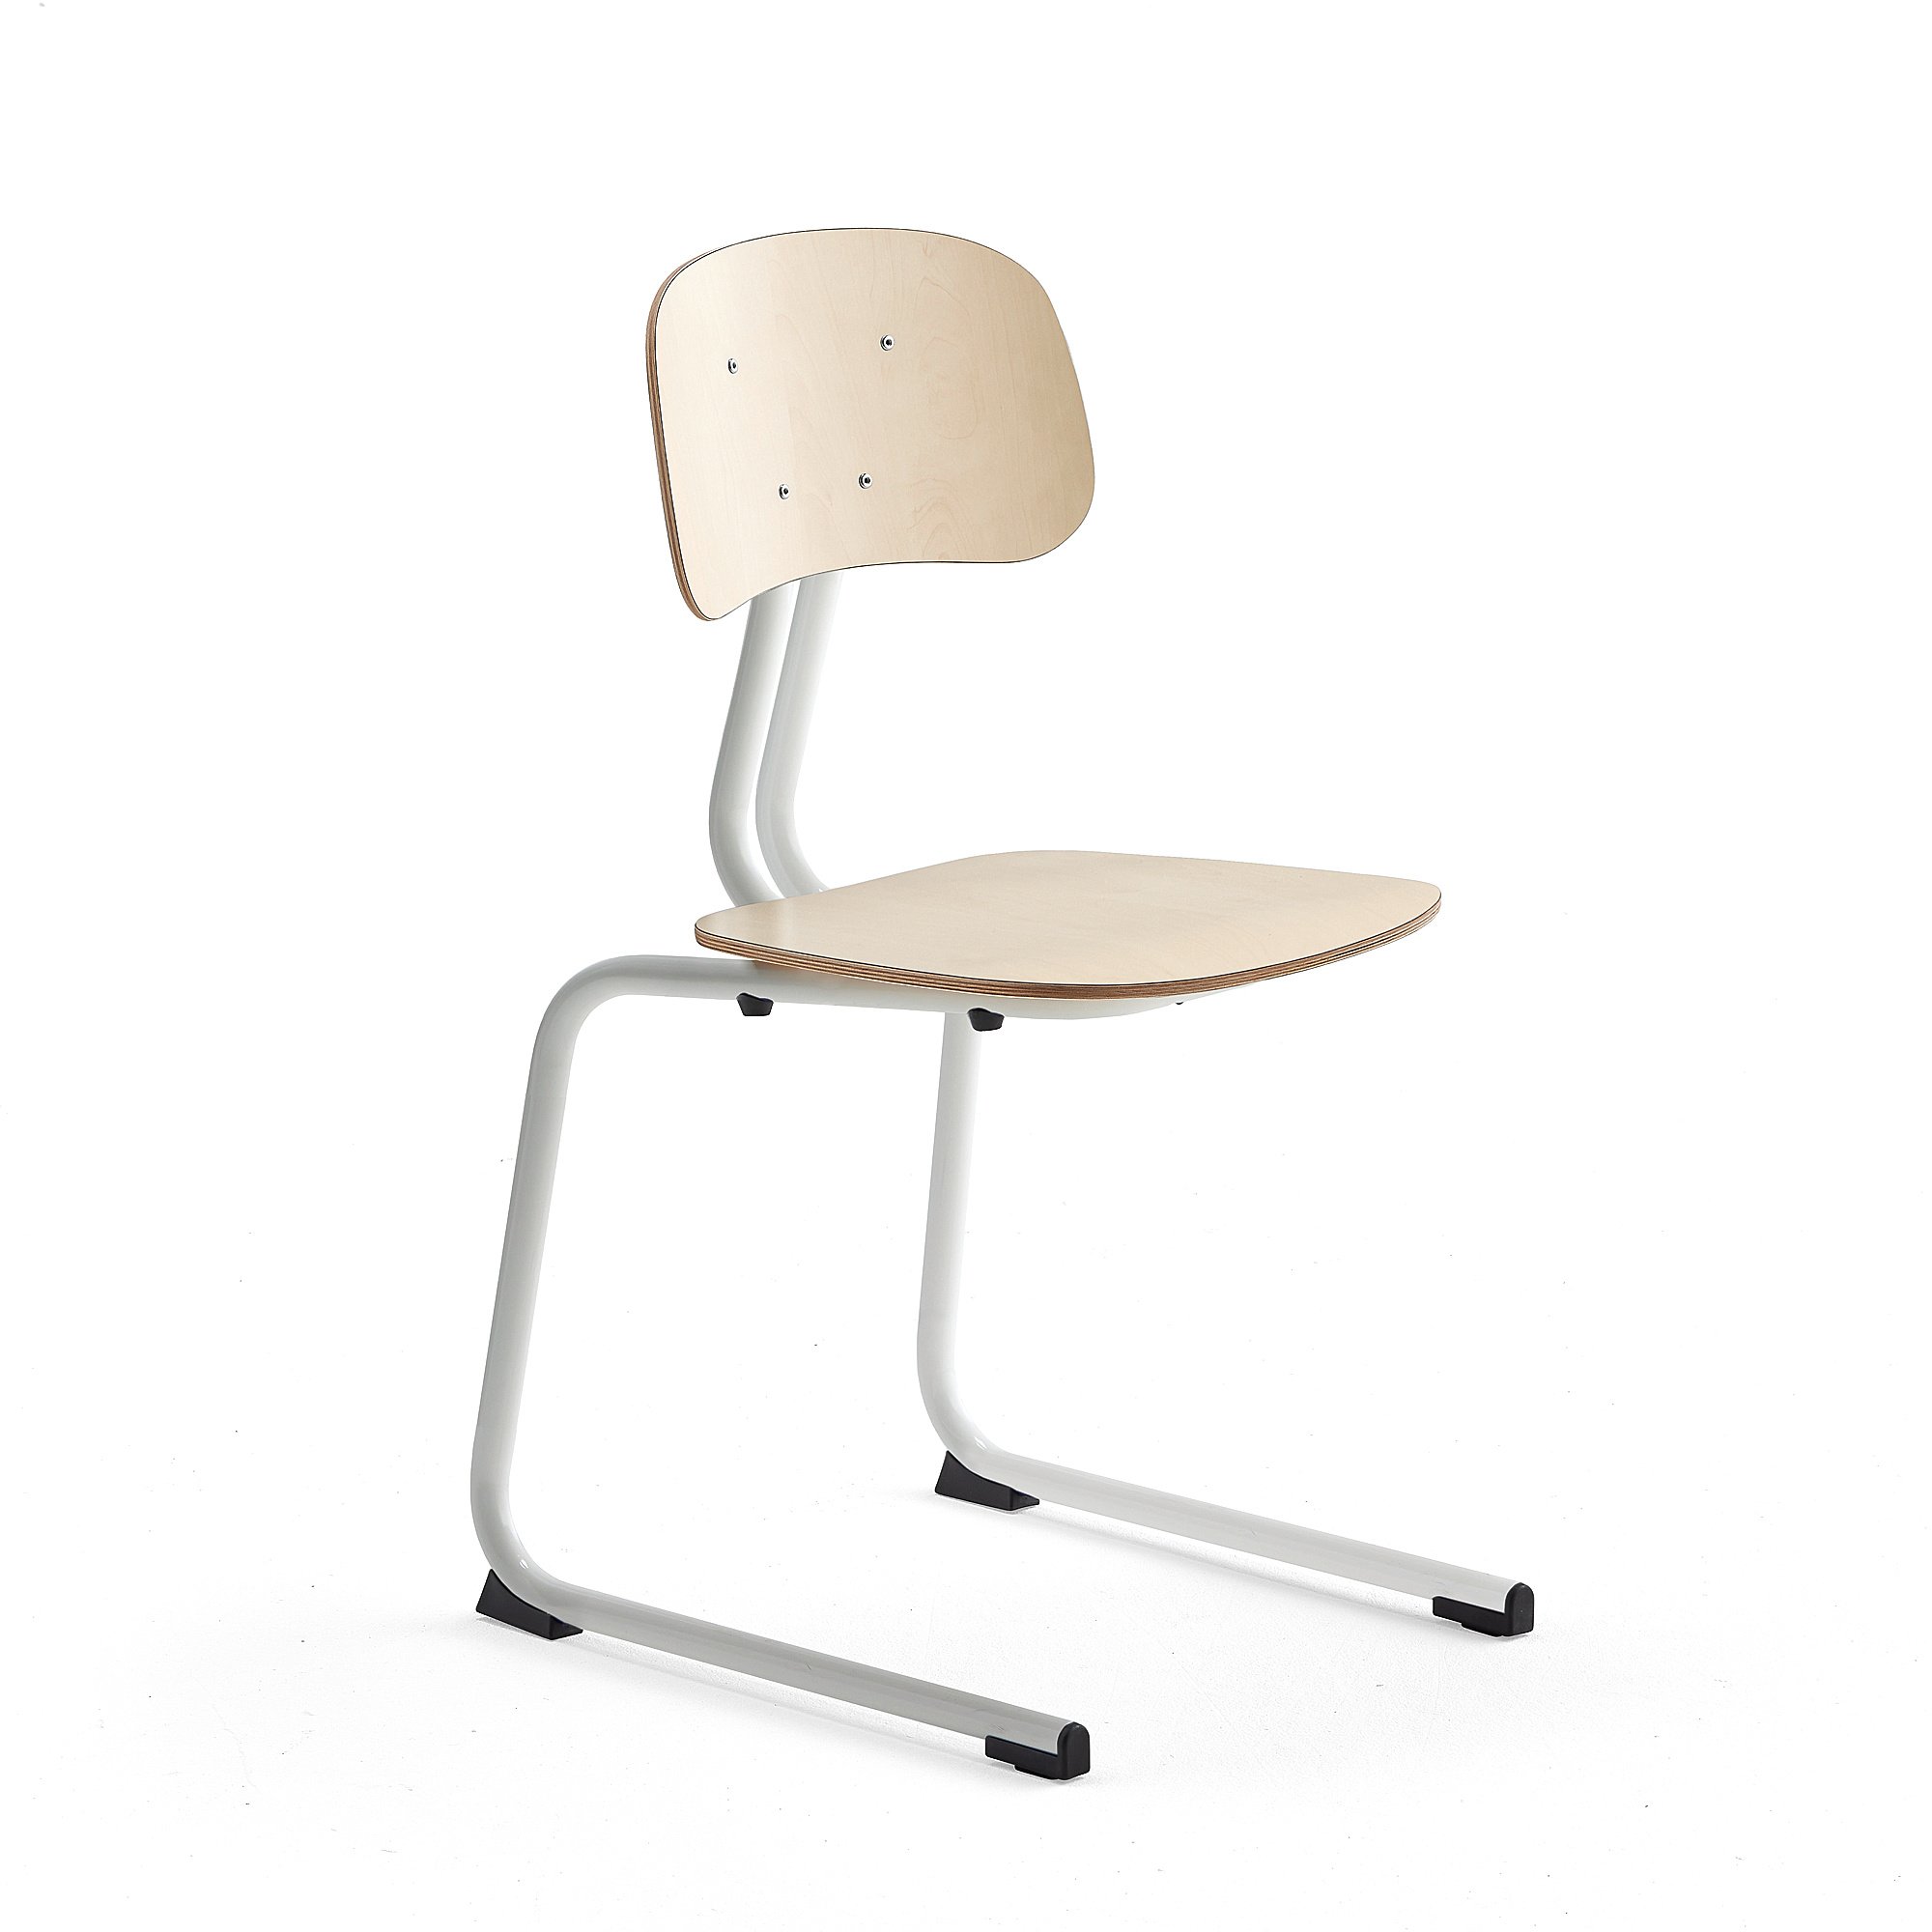 Školní židle YNGVE, ližinová podnož, výška 460 mm, bílá/bříza